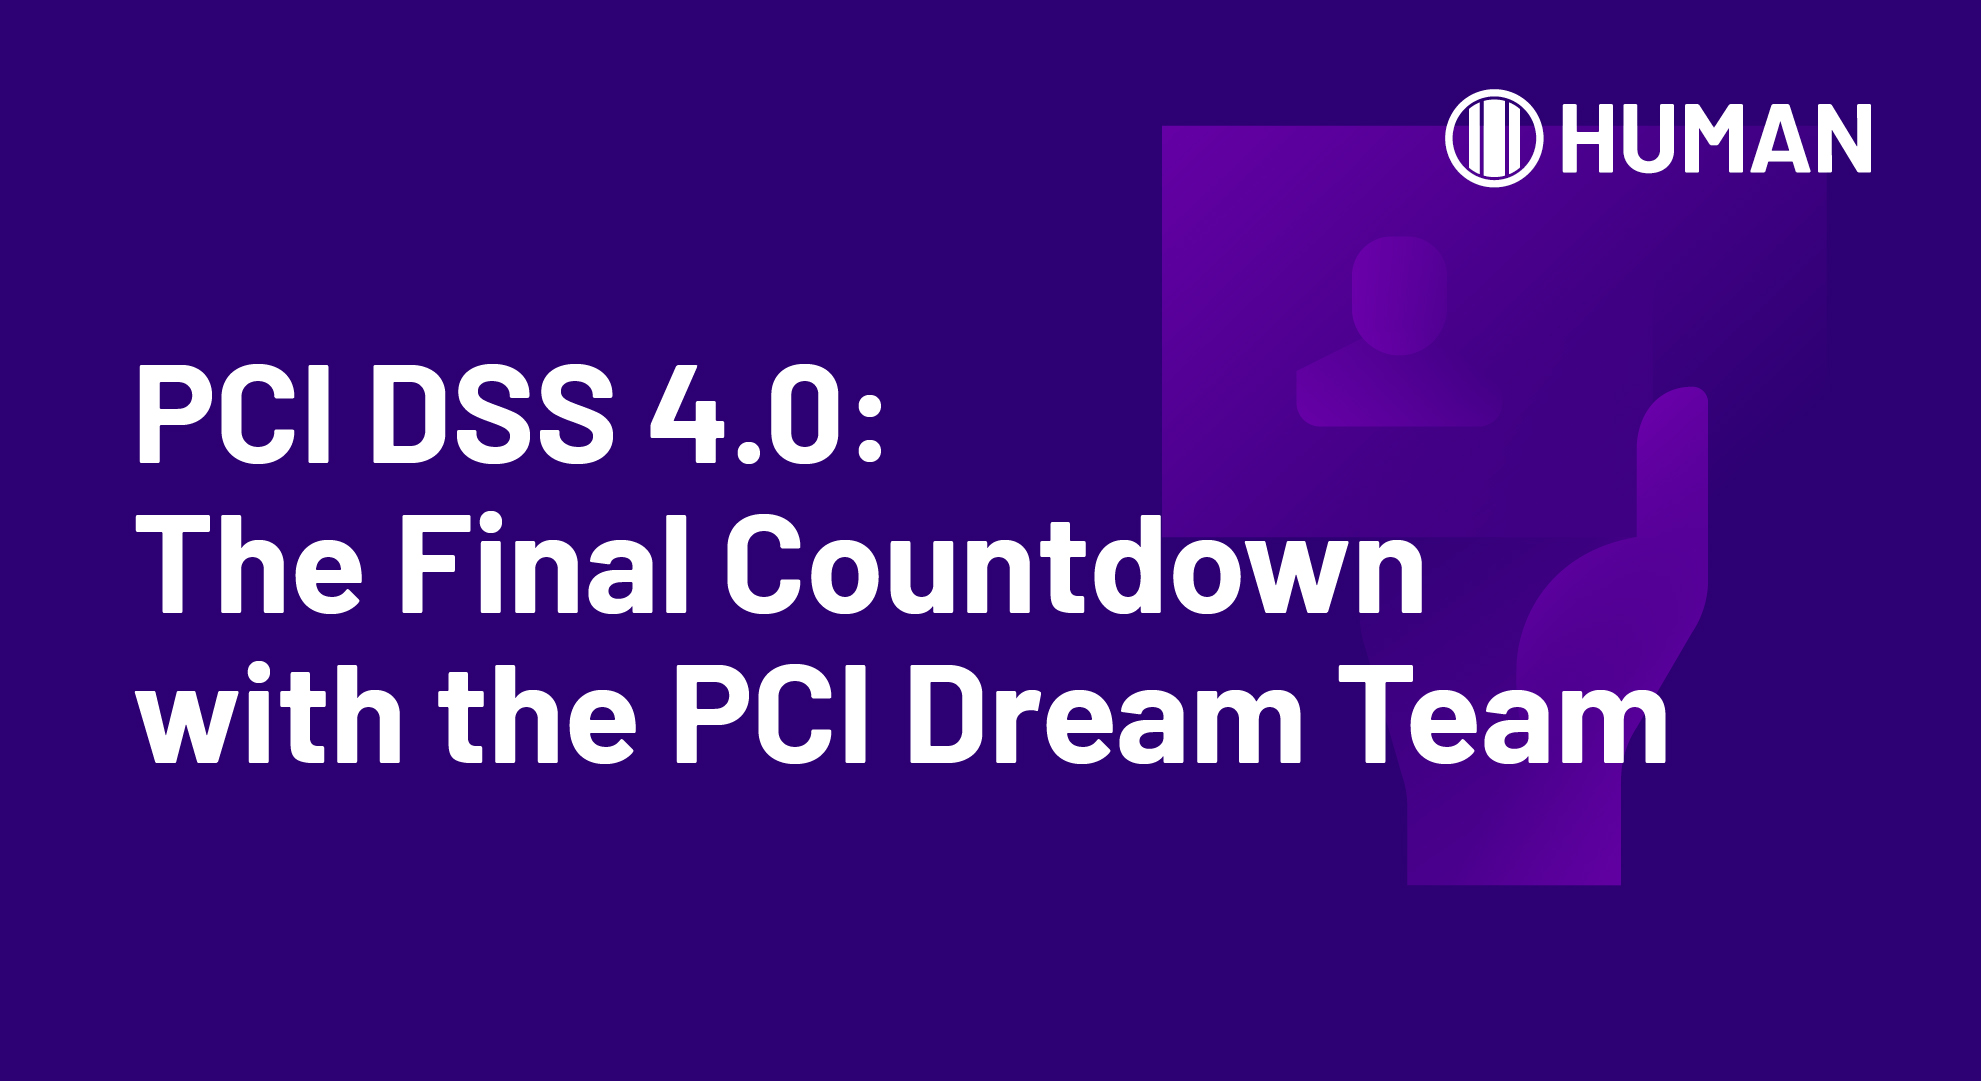 HUMAN_LIL_PCI DSS Countdown_on-demand